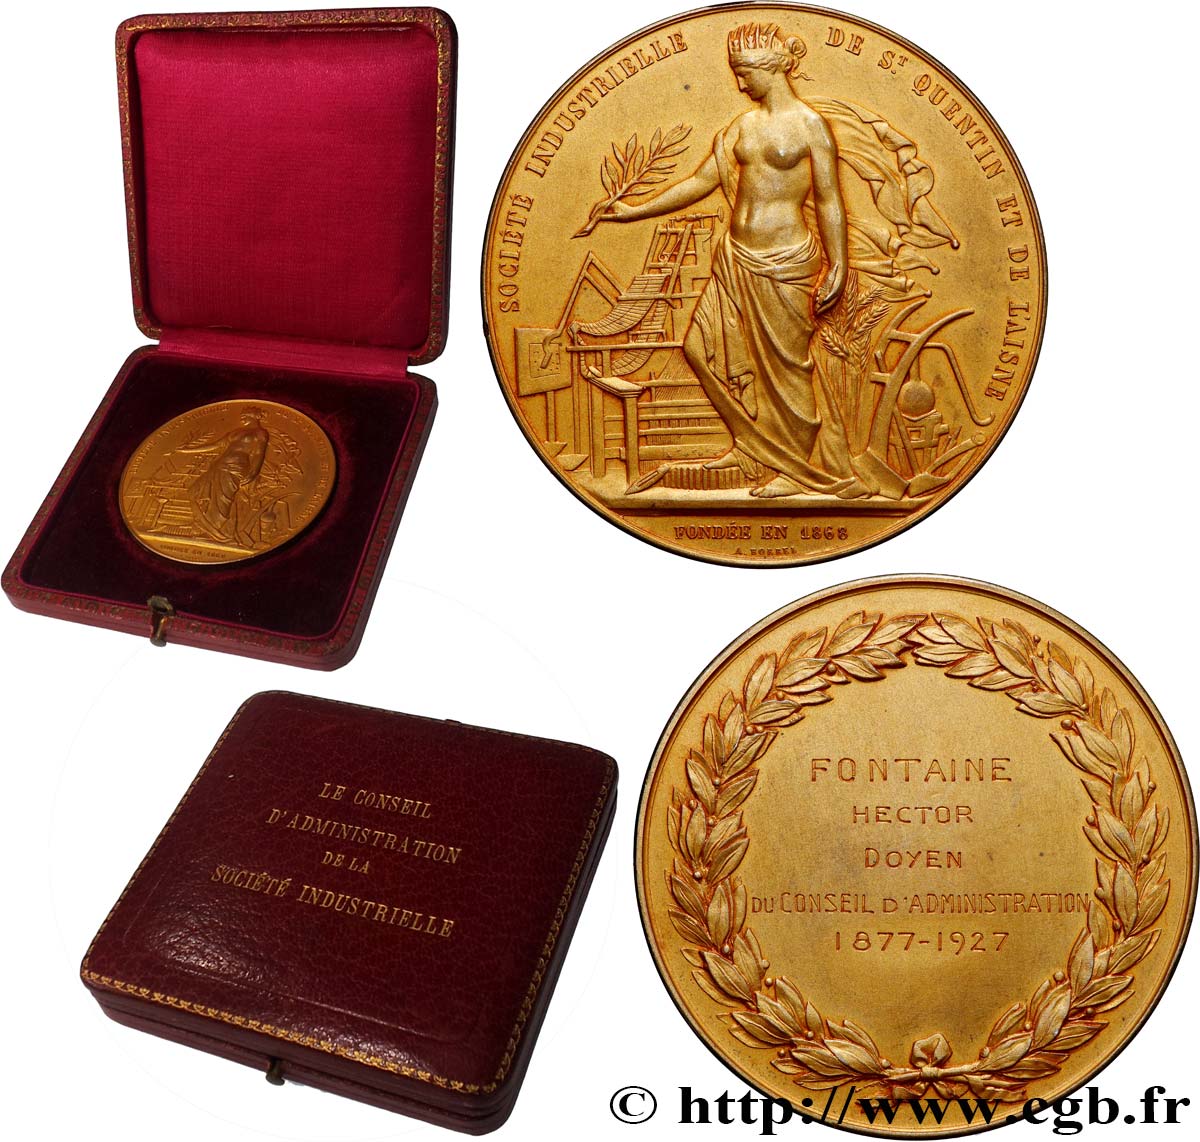 TERCERA REPUBLICA FRANCESA Médaille, Société industrielle de St Quentin et de l’Aisne, Conseil d’administration EBC